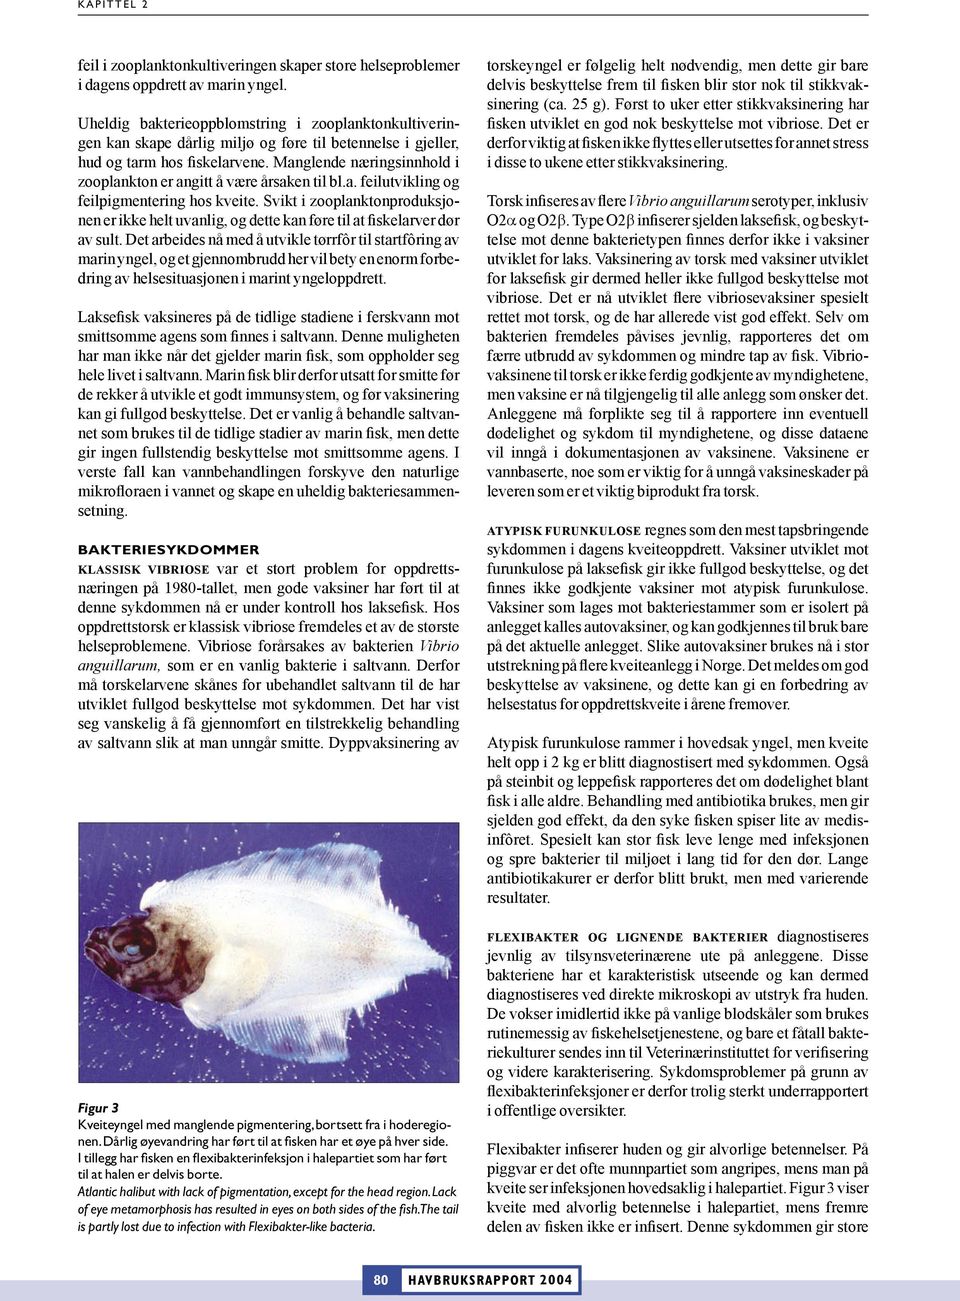 Manglende næringsinnhold i zooplankton er angitt å være årsaken til bl.a. feilutvikling og feilpigmentering hos kveite.